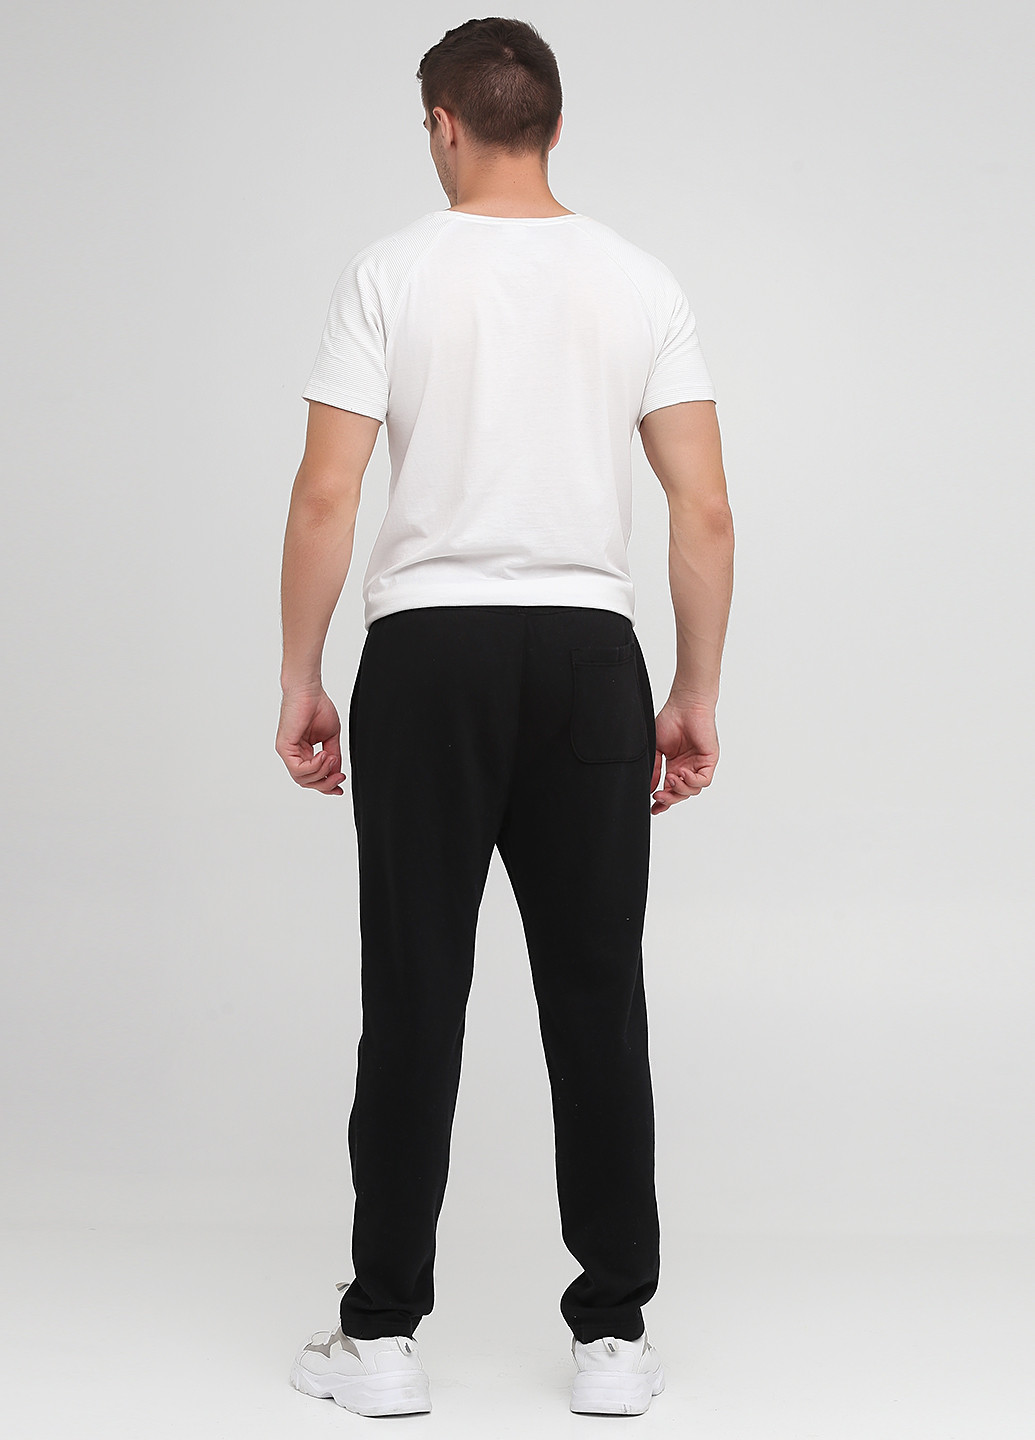 Черные спортивные демисезонные прямые брюки Abercrombie & Fitch